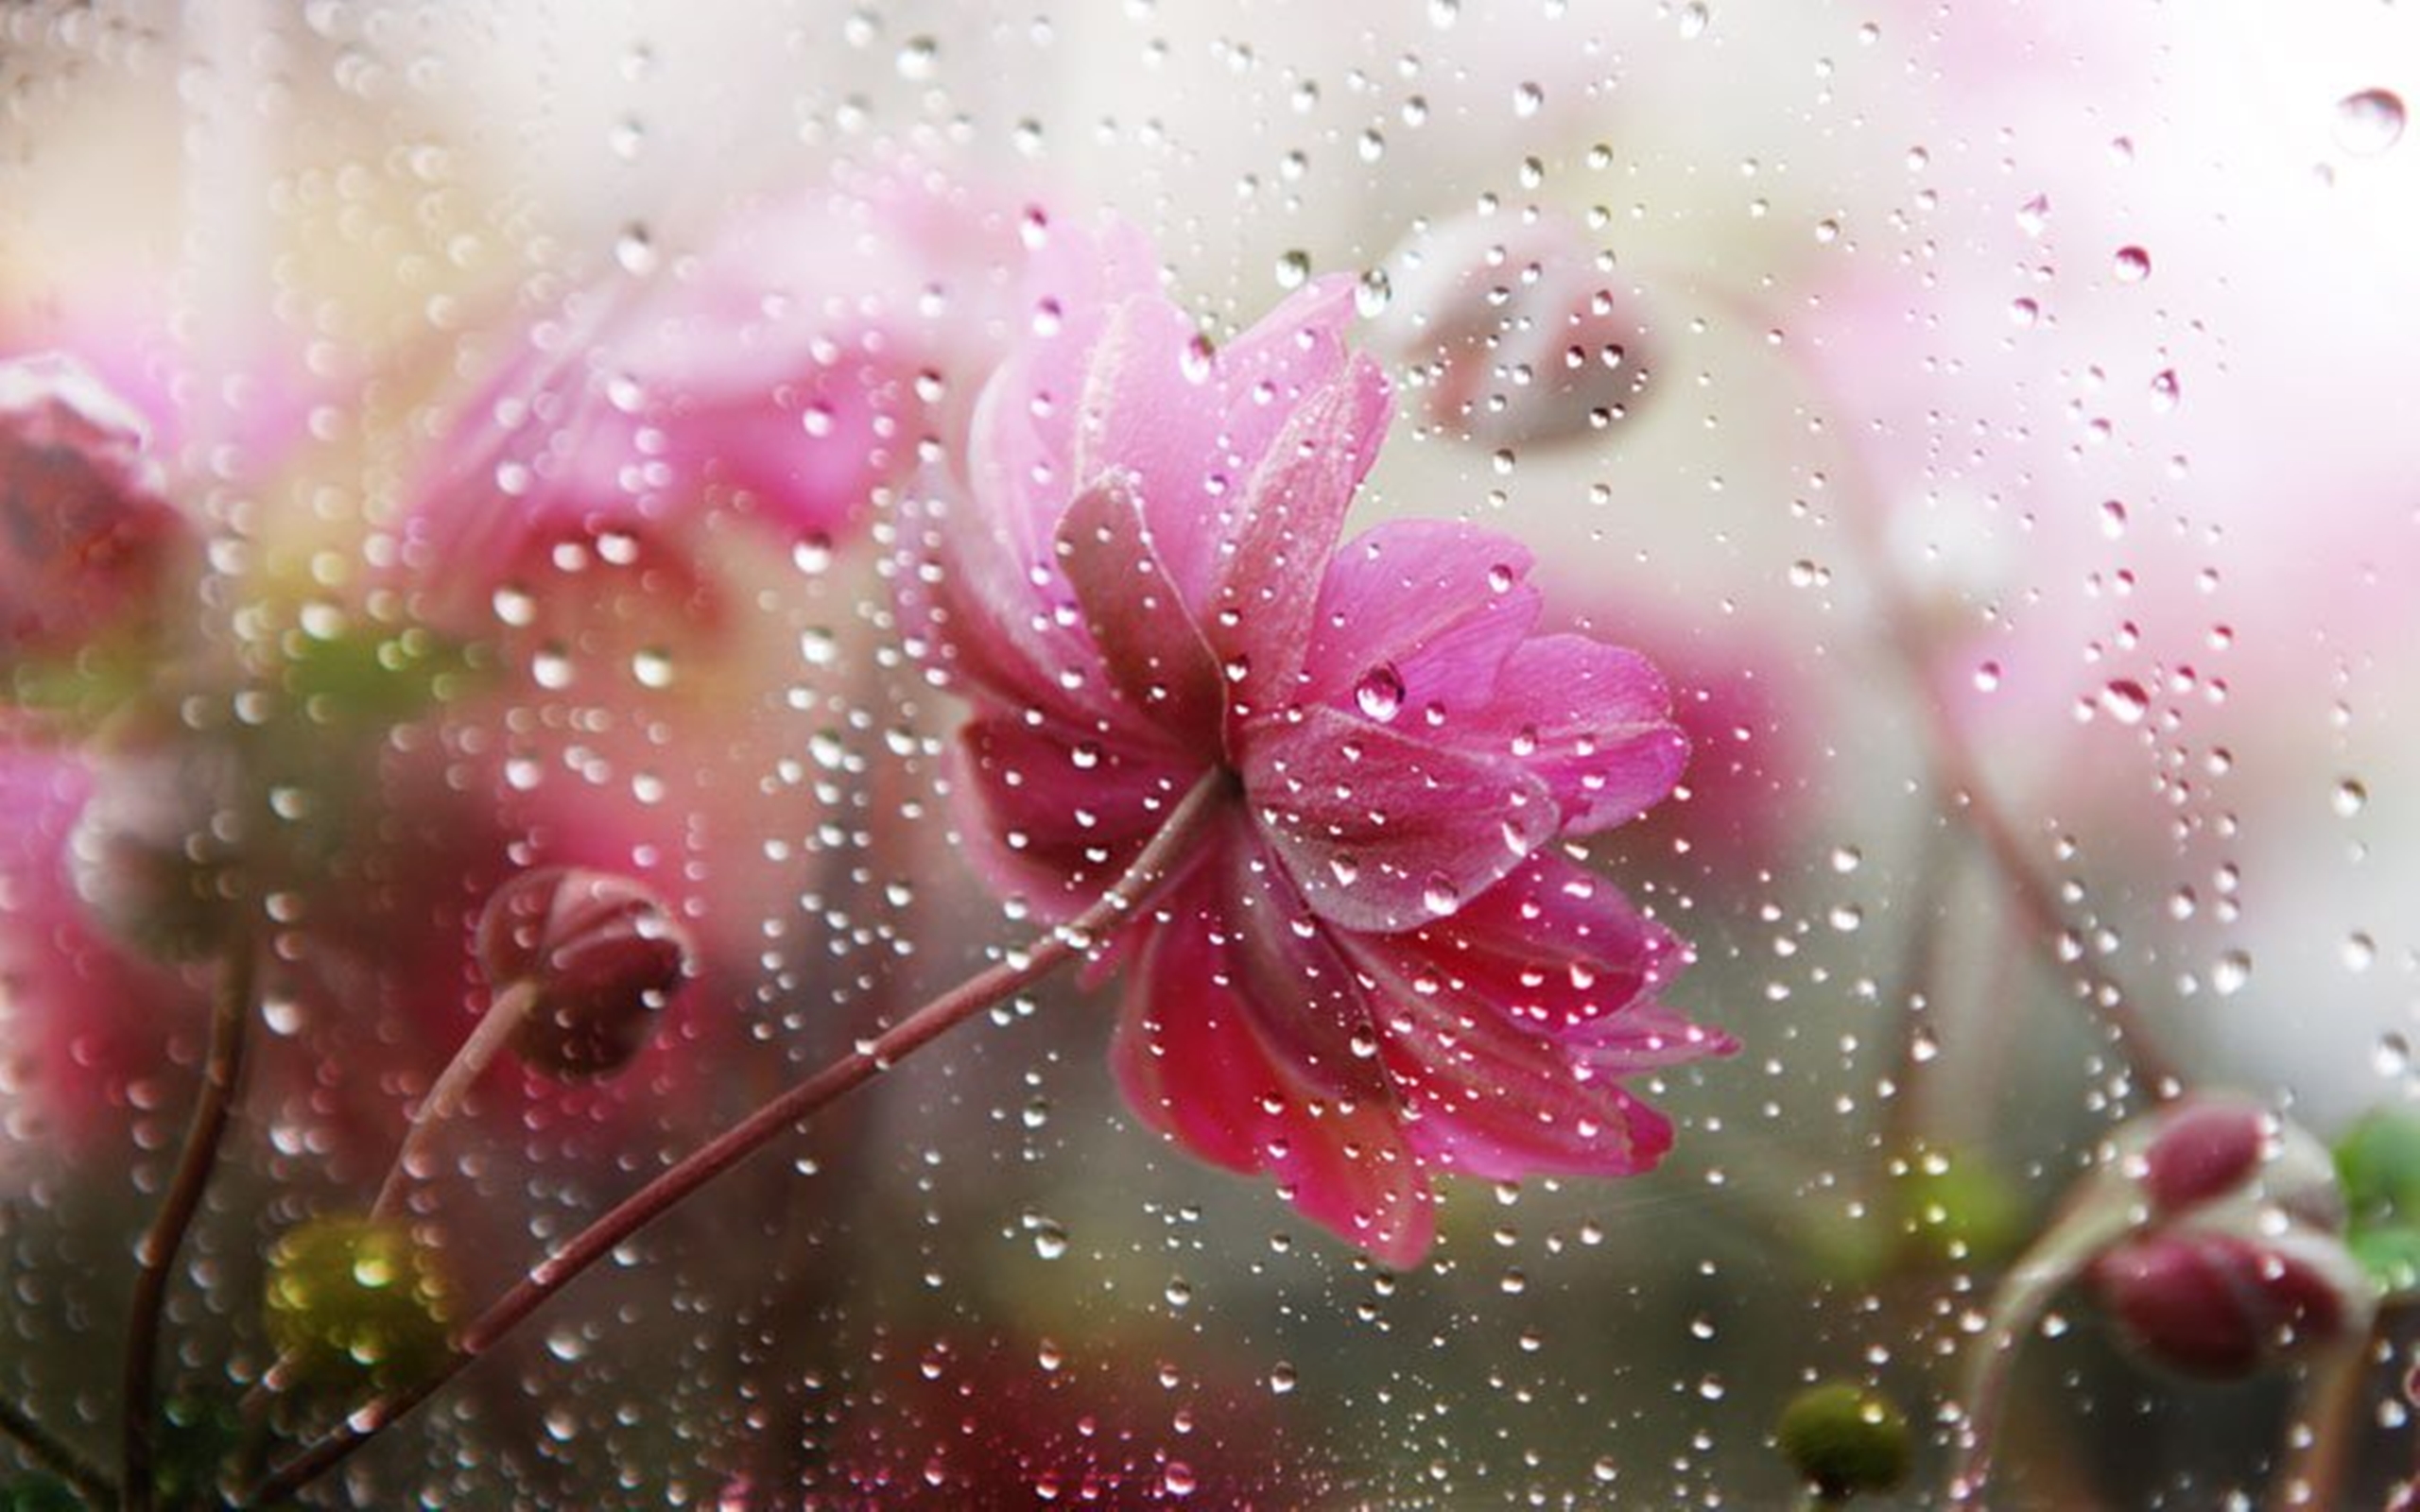 Afbeeldingsresultaat voor flowers in the rain